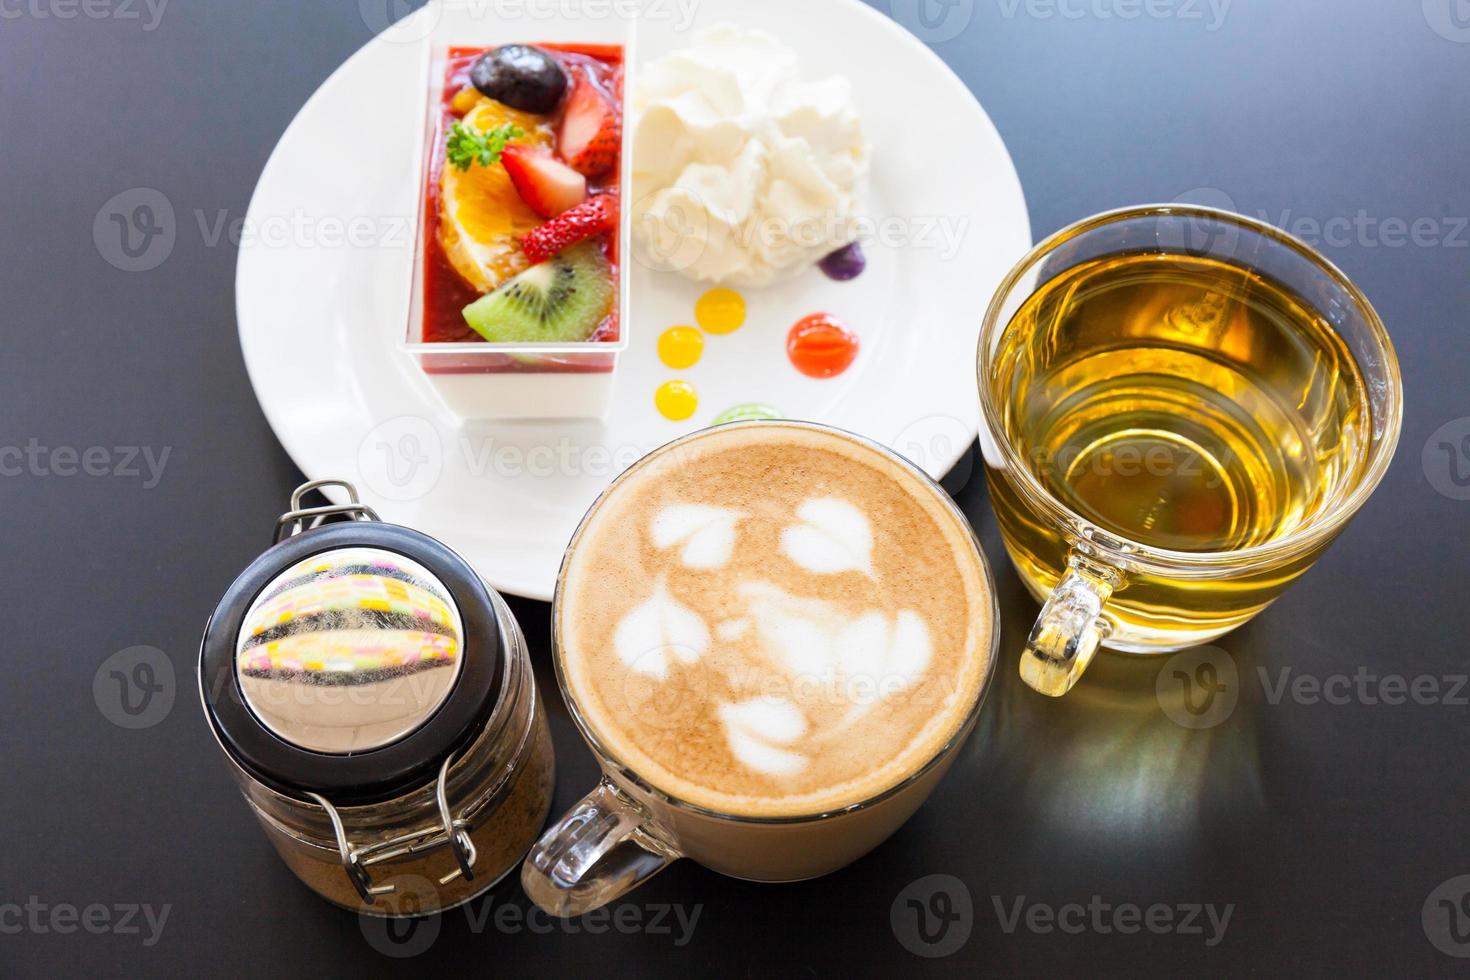 aardbeienroom en een kopje thee en koffie op een houten ondergrond, selectieve focus foto